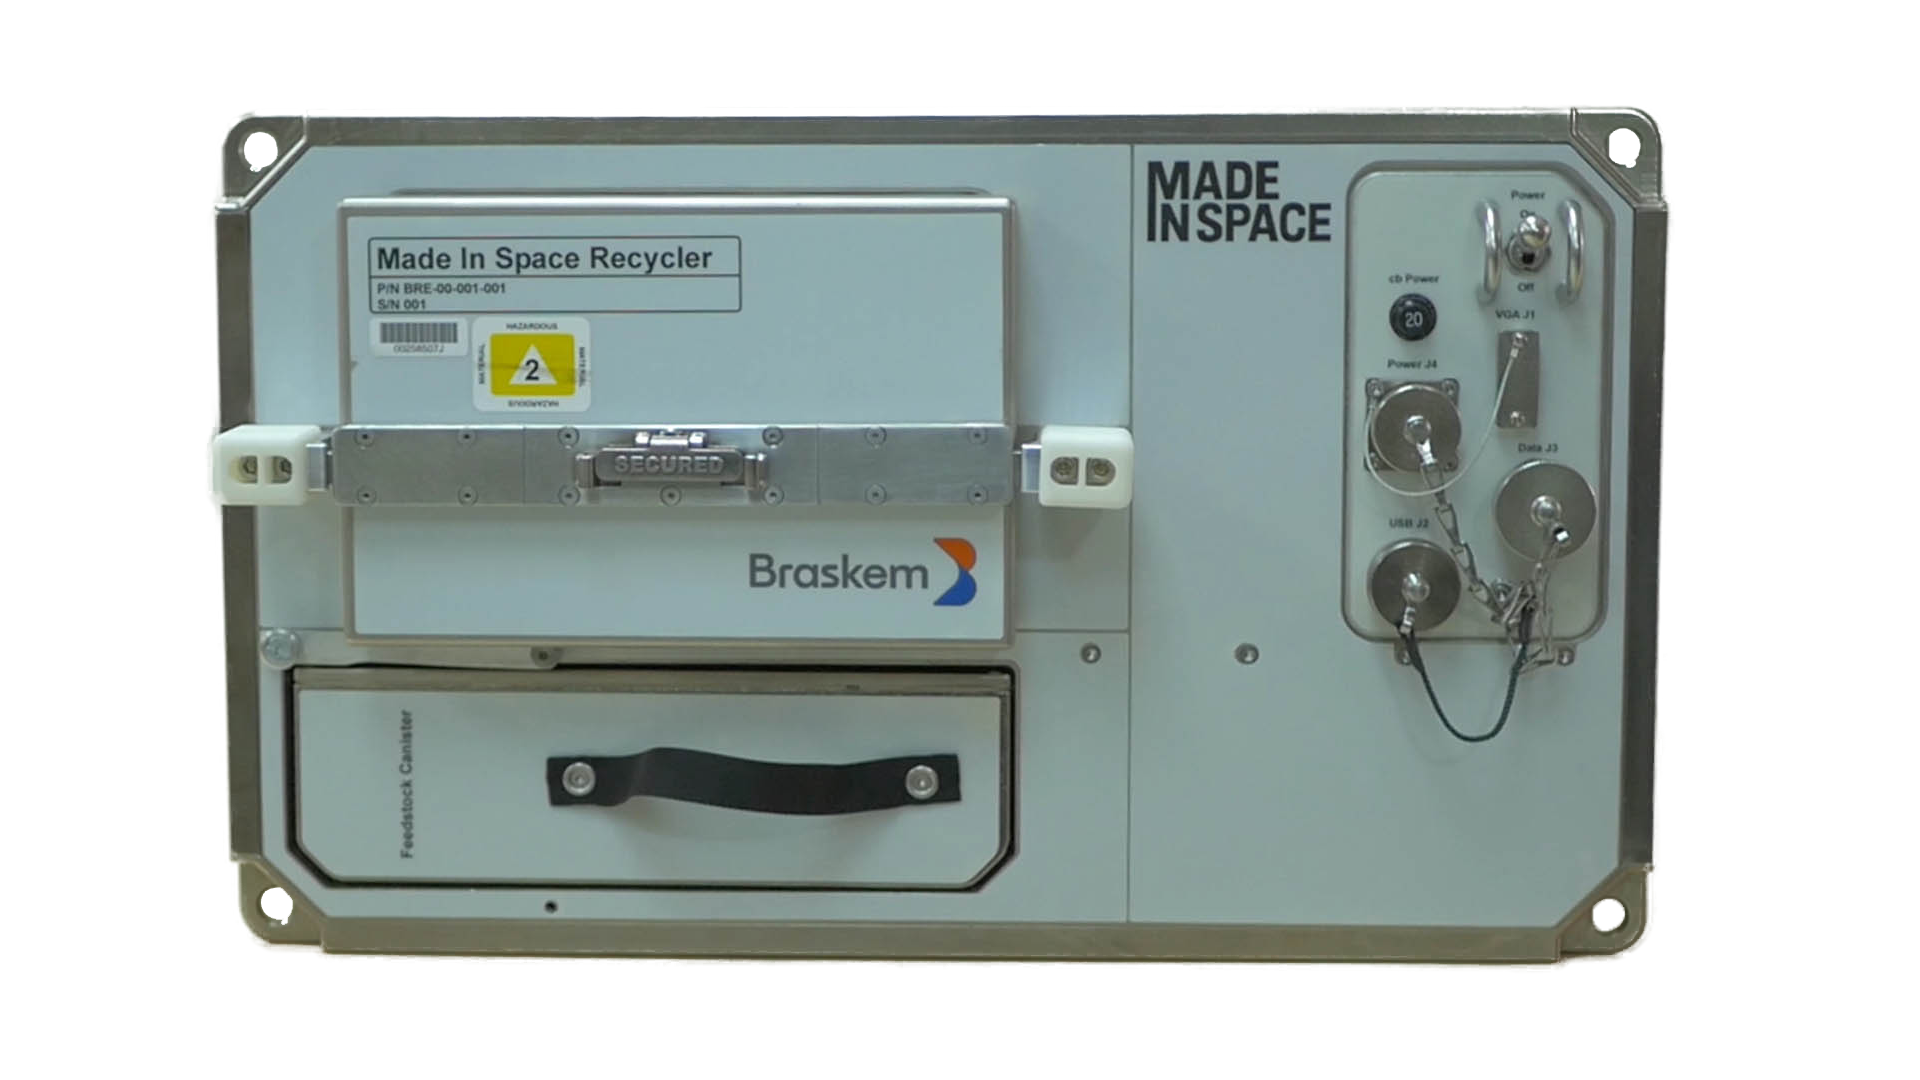 Recicladora de plástico que será usada por astronautas na Estação Espacial Internacional feita com tecnologia brasileira (Foto: Divulgação)